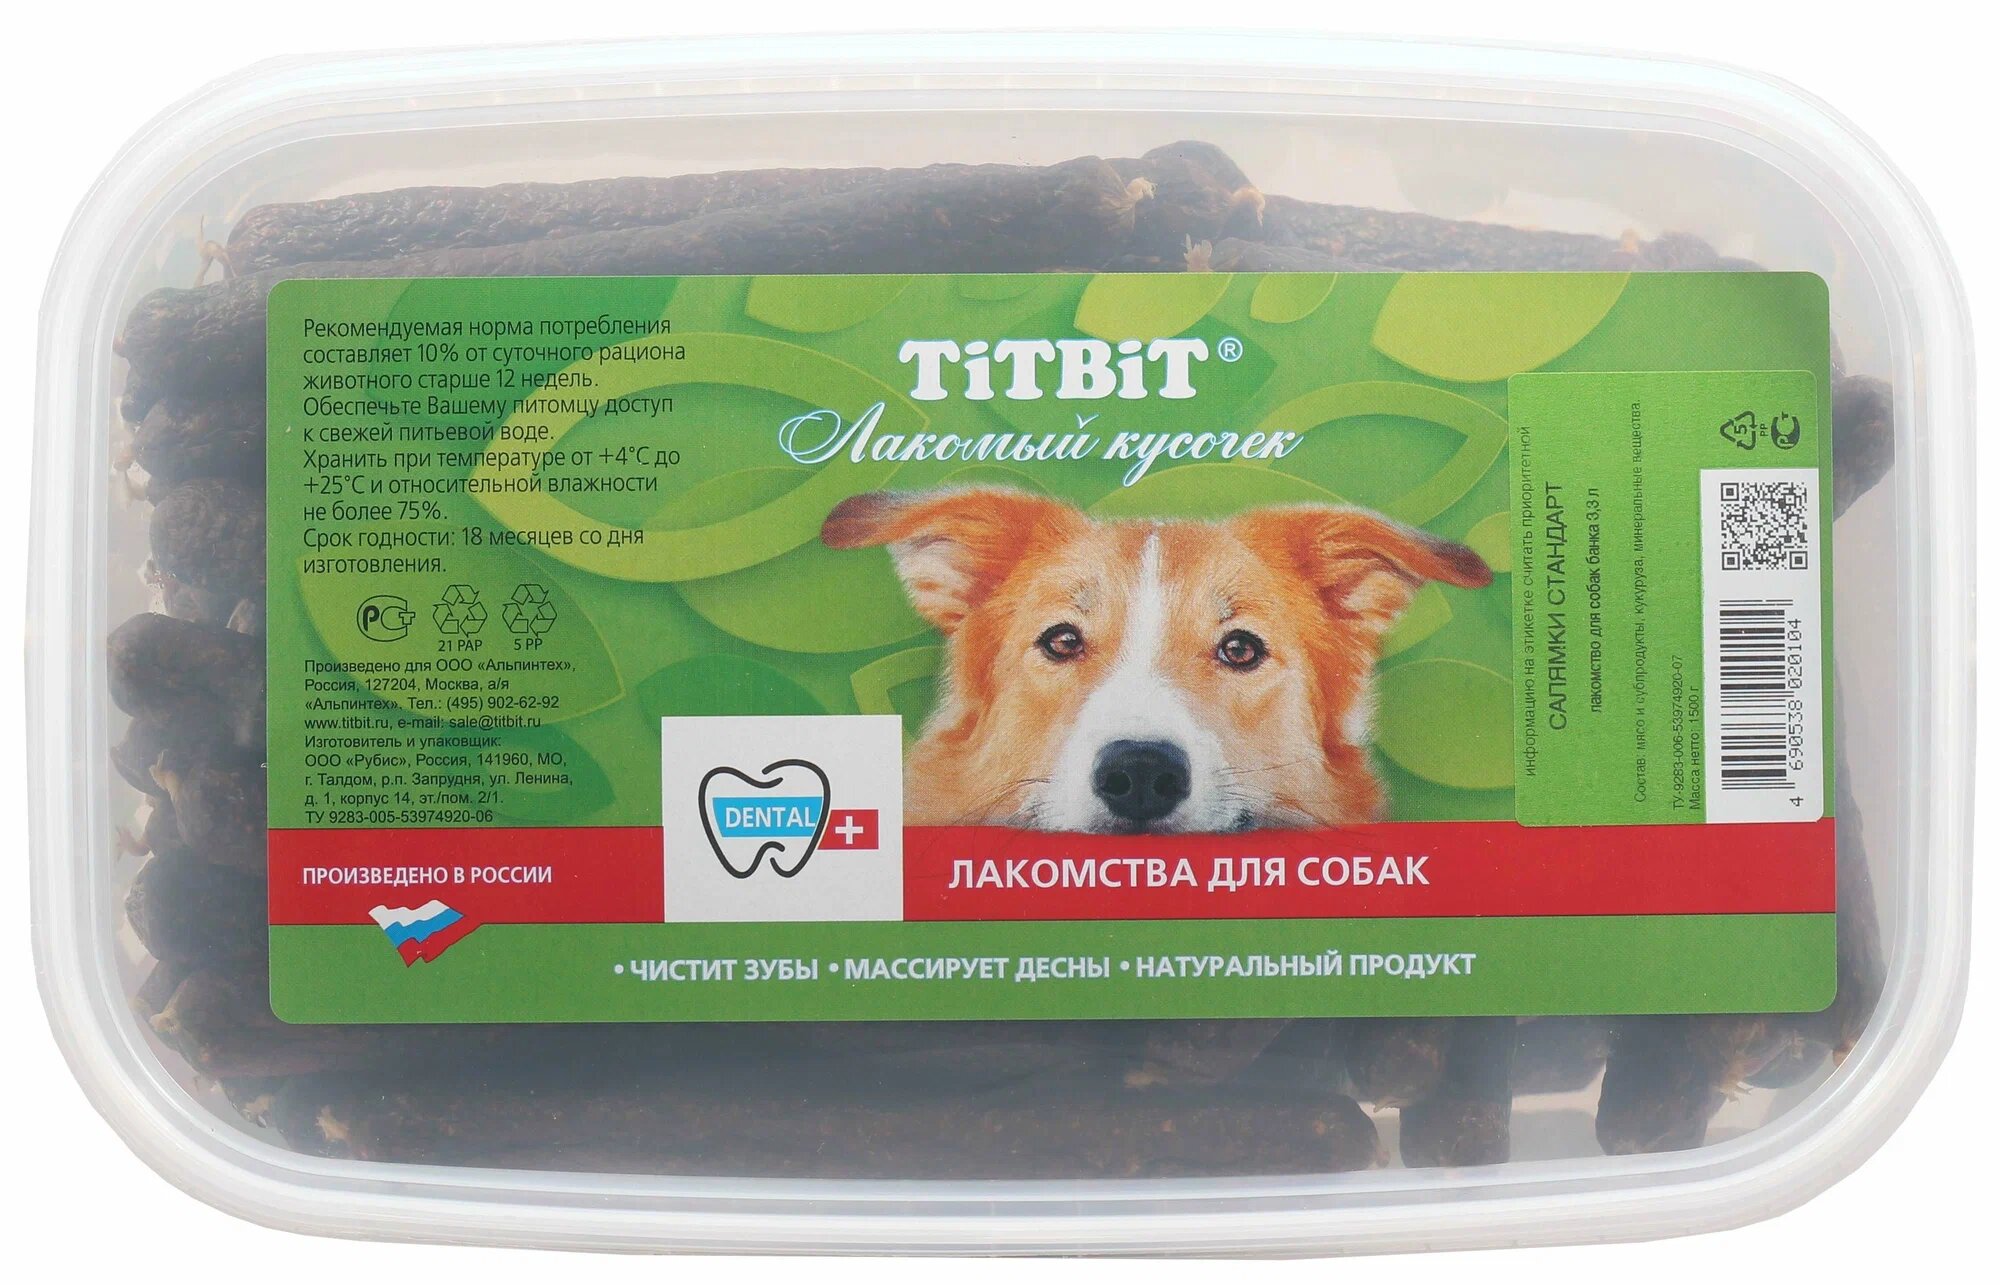 TitBit Лакомство для собак Салямки St - банка пластиковая 3.3 л